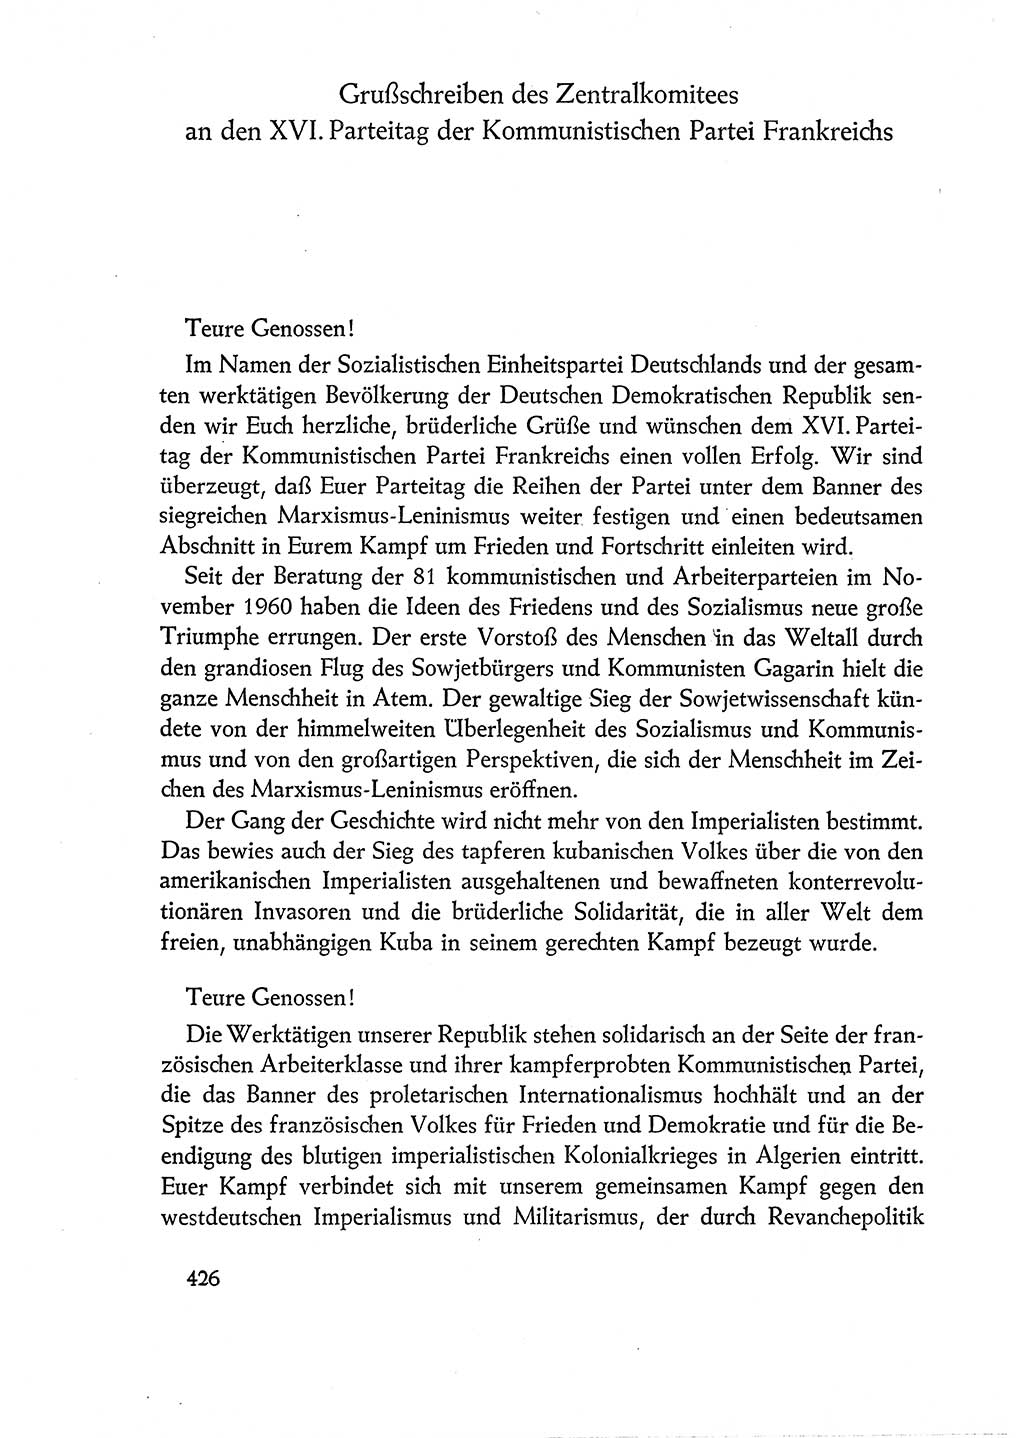 Dokumente der Sozialistischen Einheitspartei Deutschlands (SED) [Deutsche Demokratische Republik (DDR)] 1960-1961, Seite 426 (Dok. SED DDR 1960-1961, S. 426)